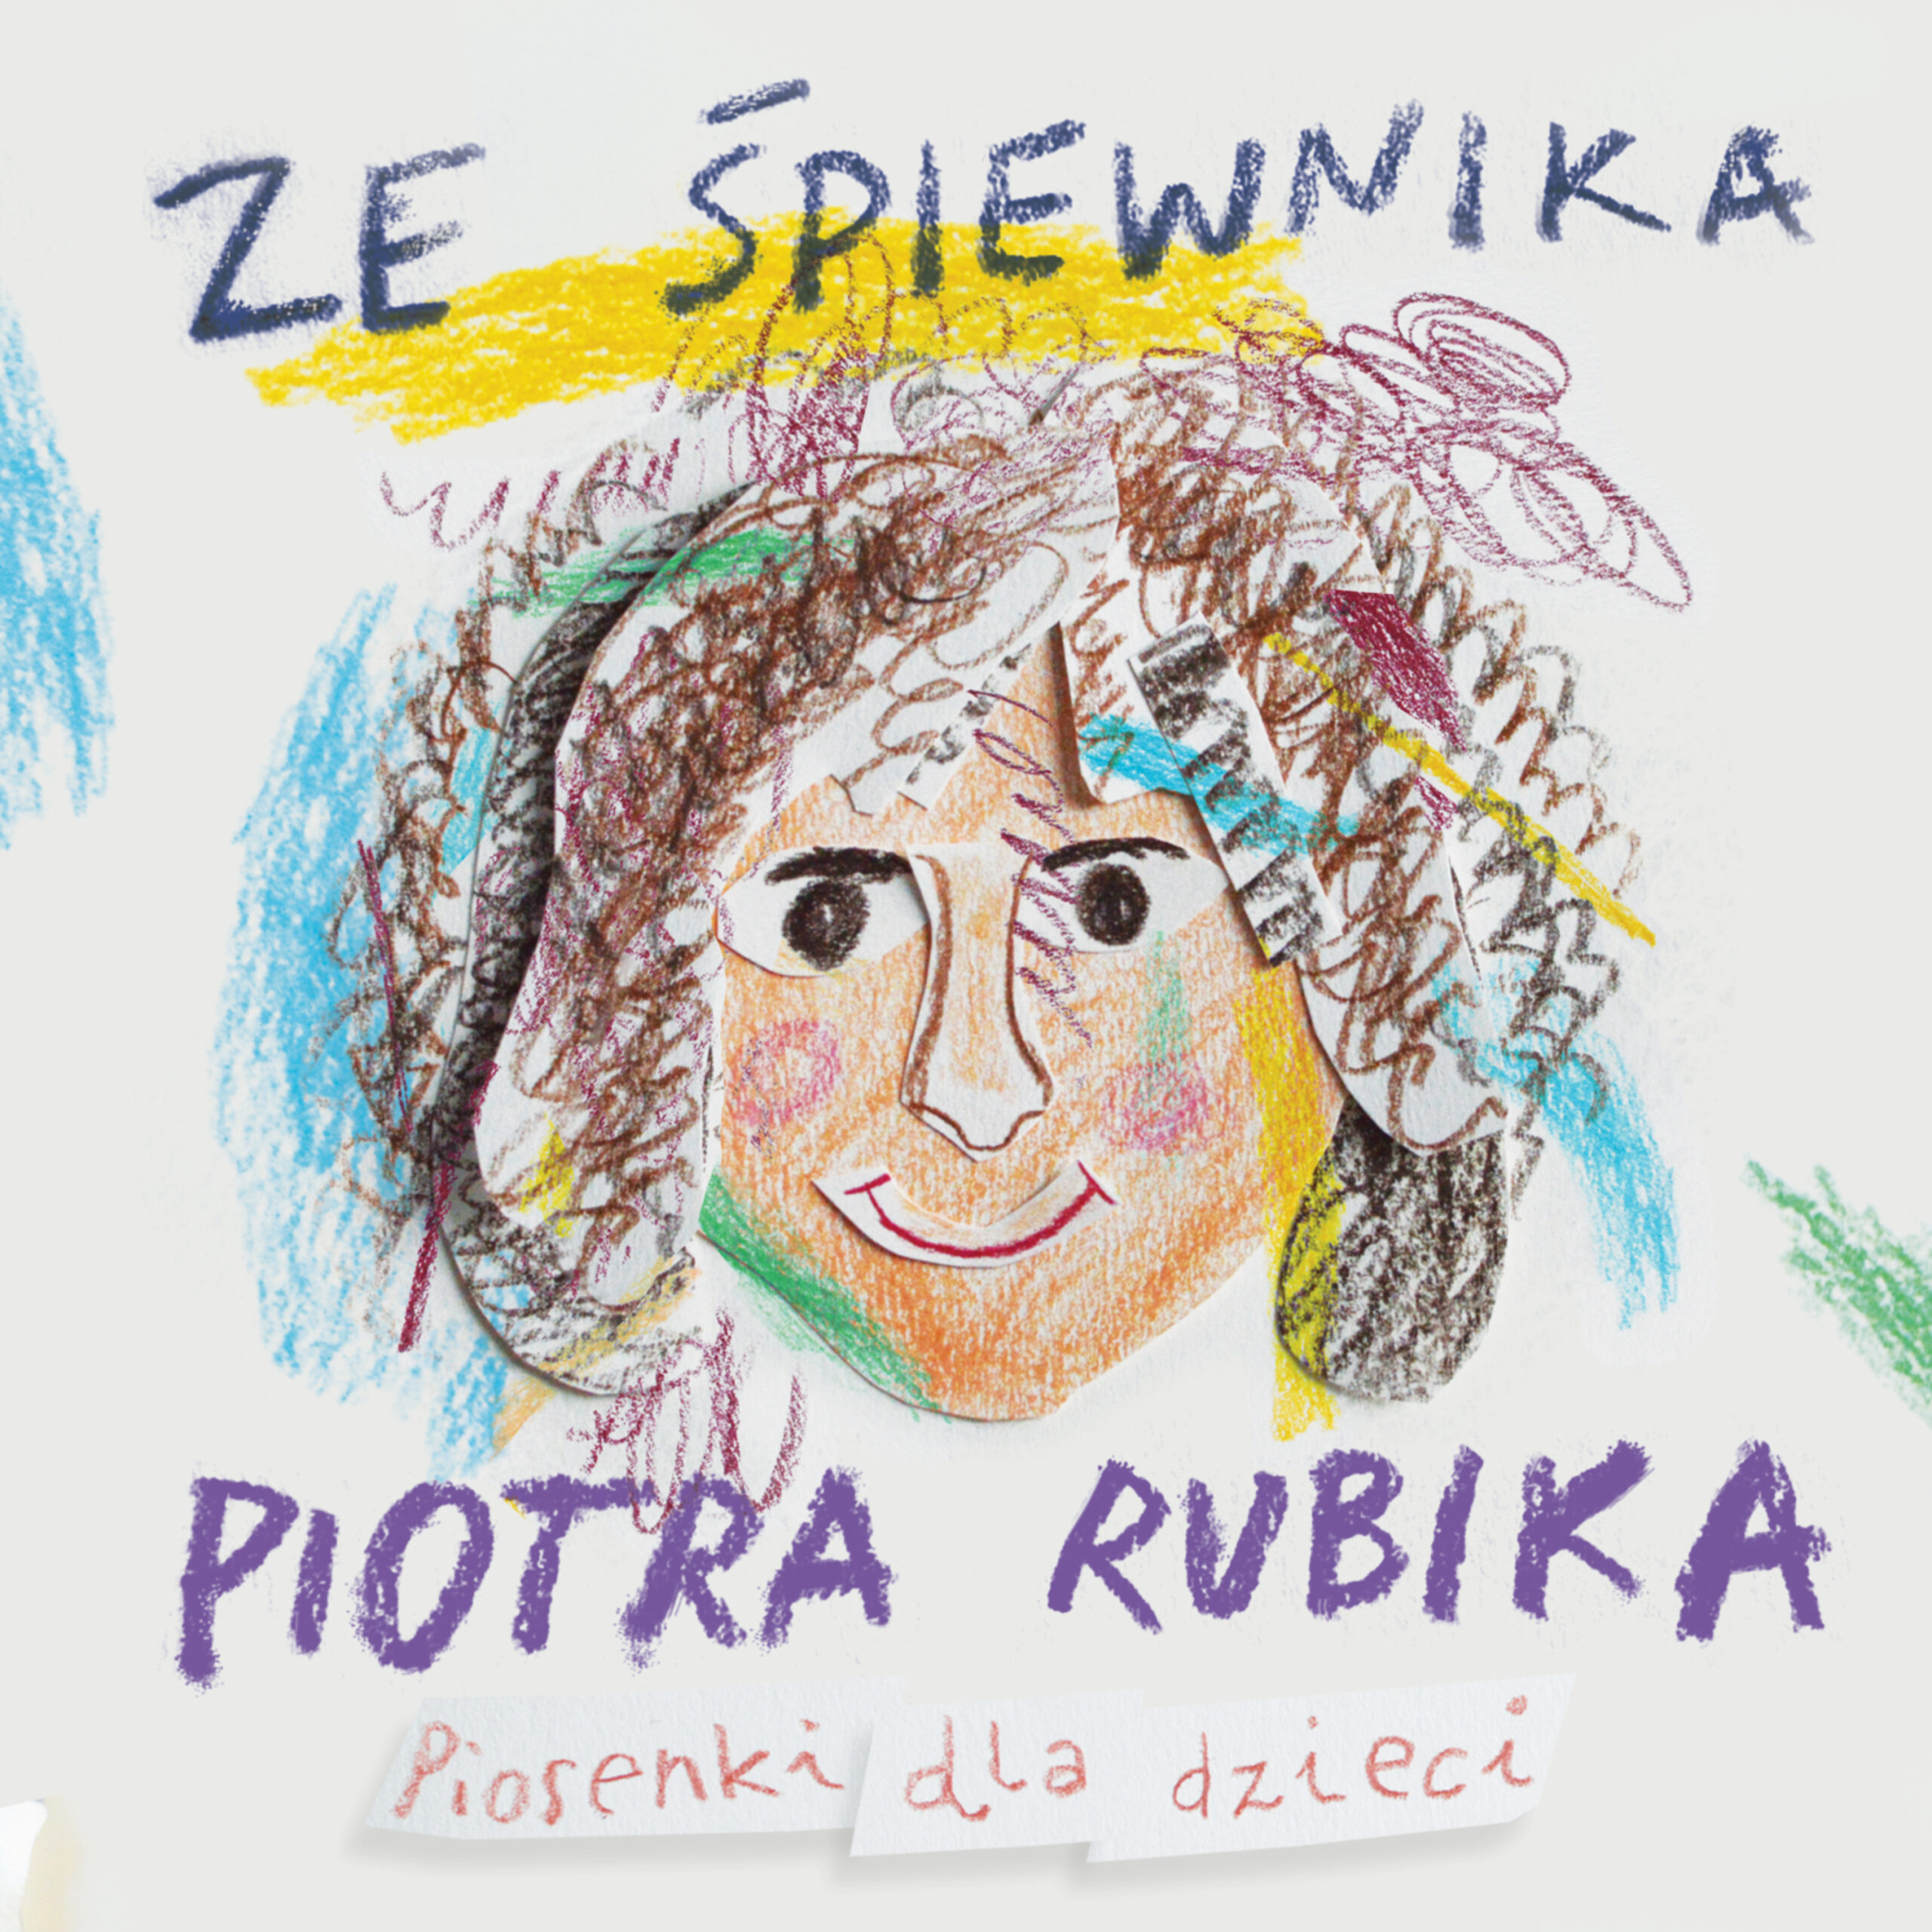 From Piotr Rubik’s songbook. Songs for children